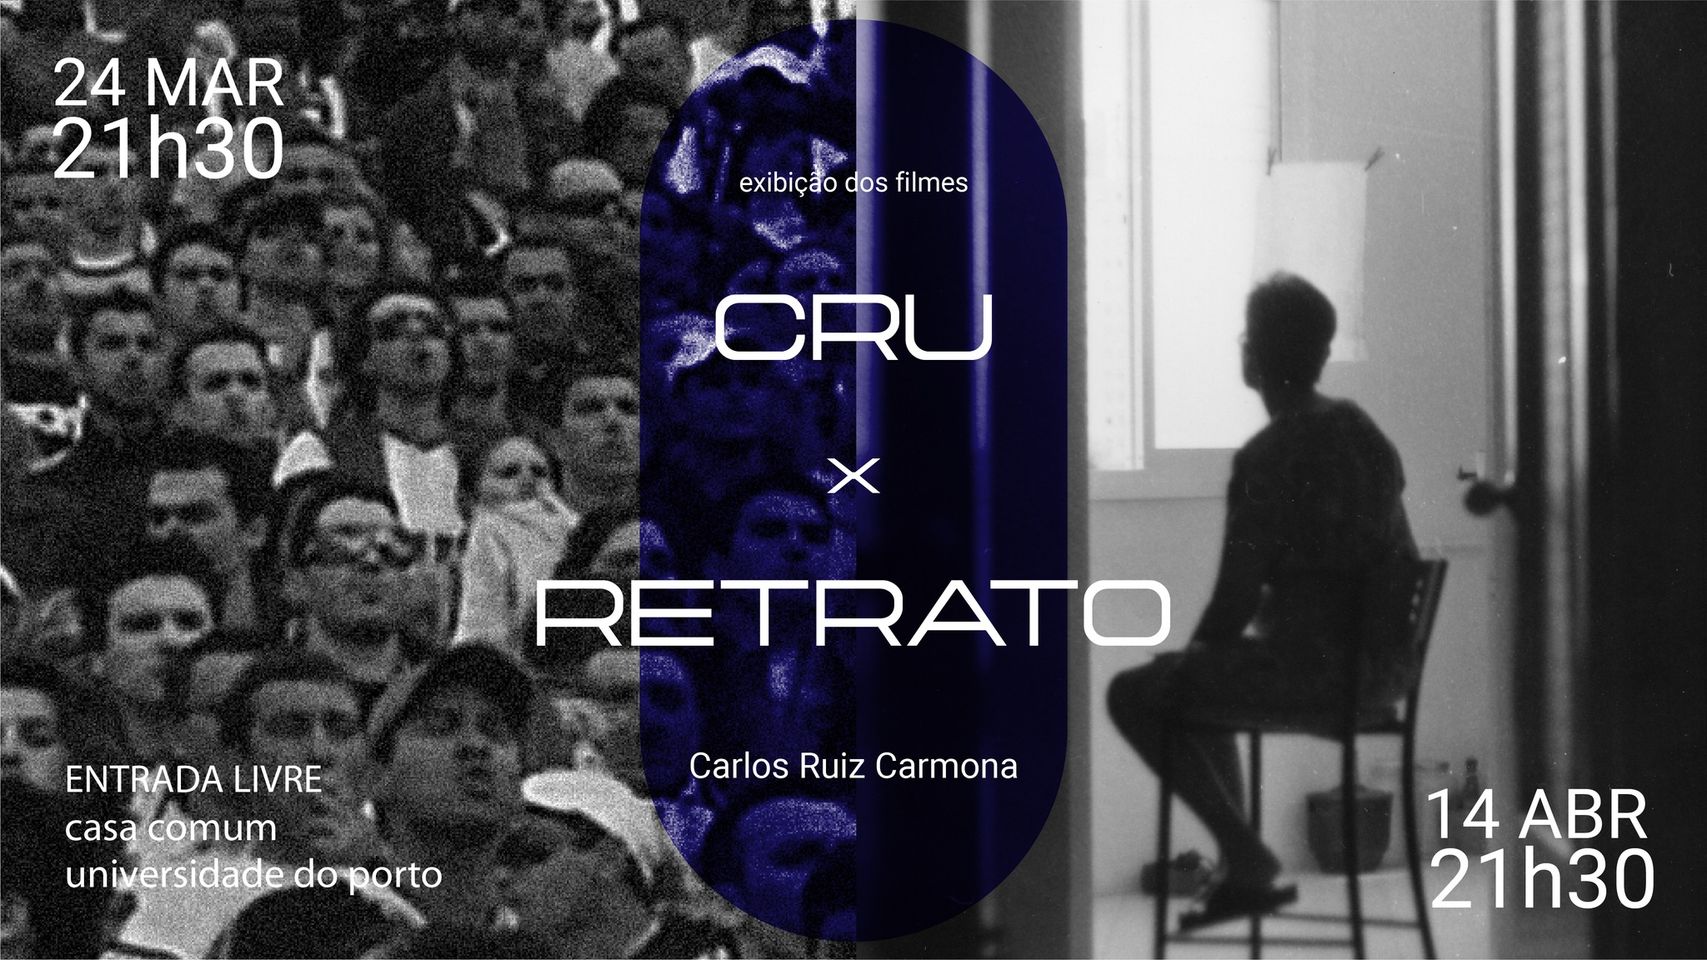 CRU + RETRATO, de Carlos Ruiz Carmona